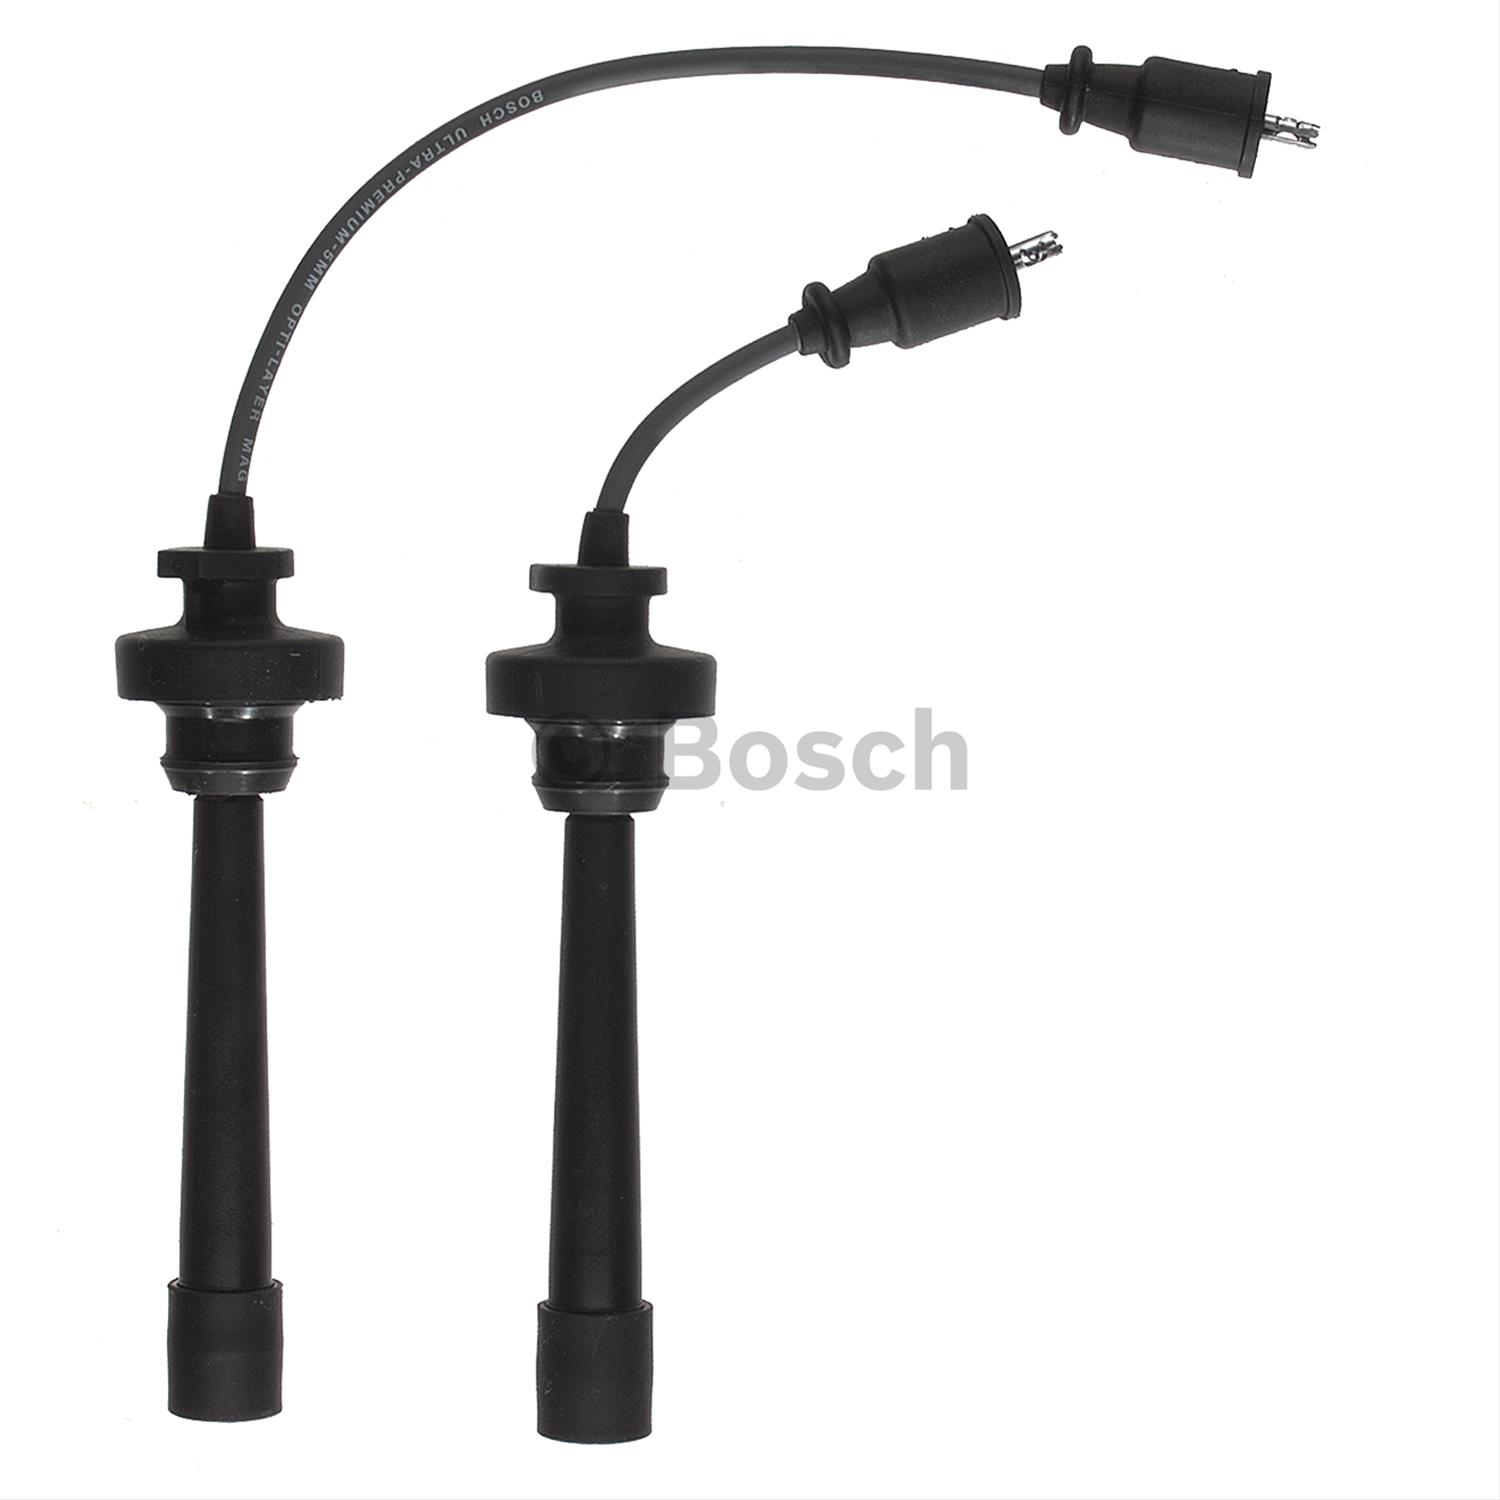 Bosch 09489 Premium Spark Plug Wire Set 